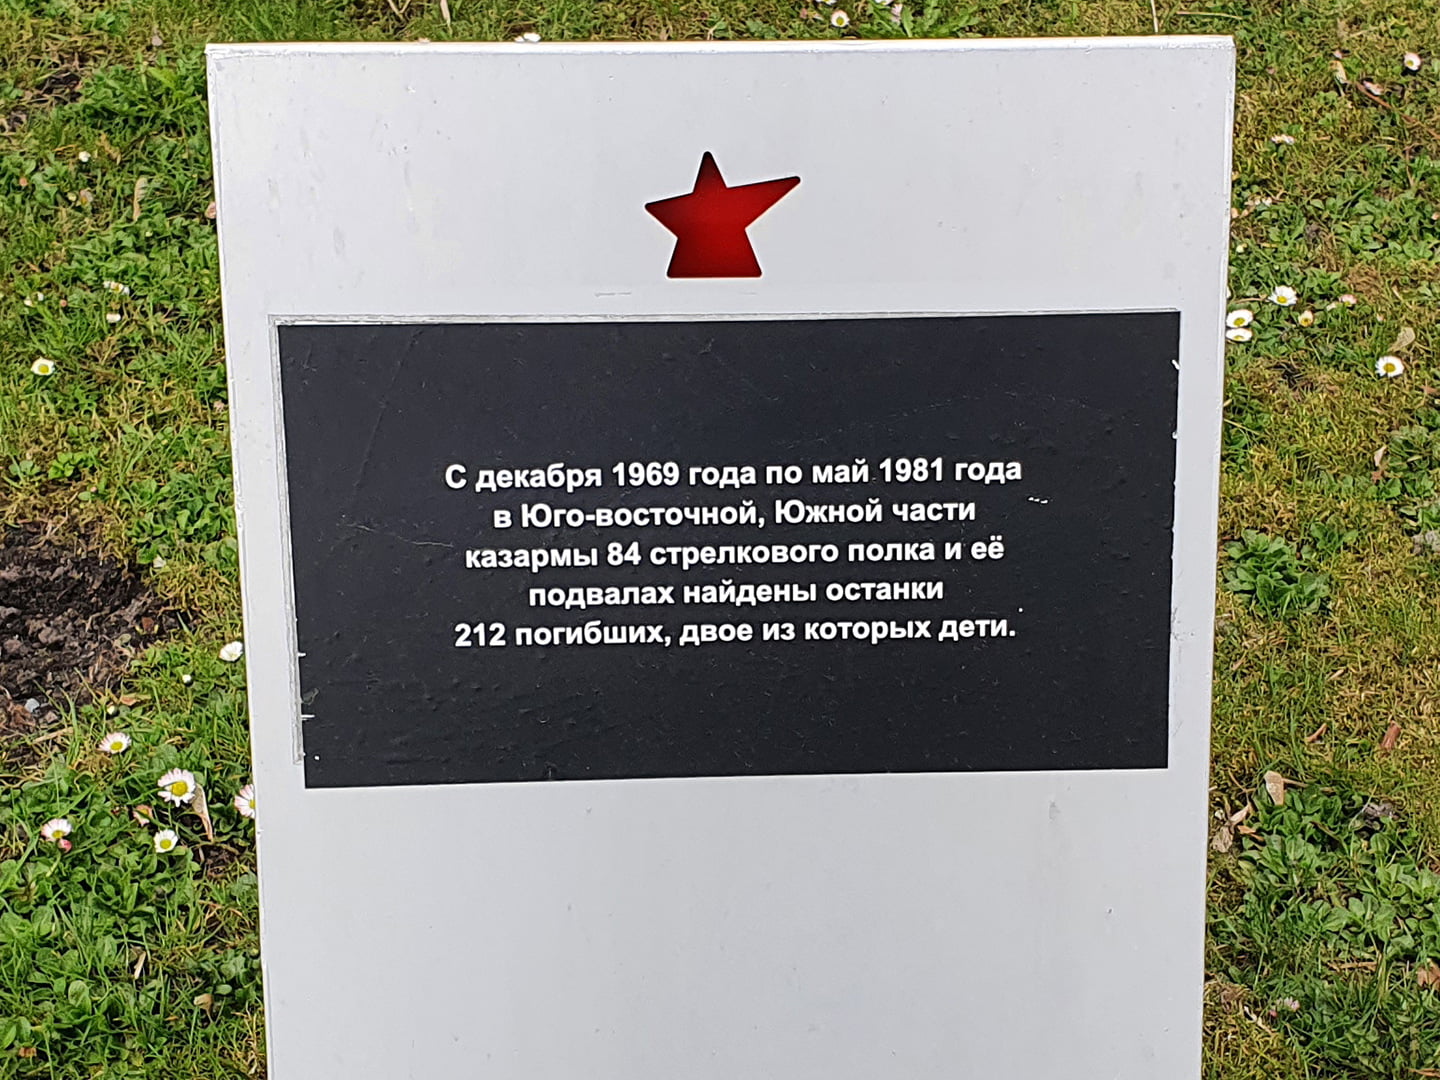 Табличка в Брестской крепости с поминанием погибших в этом месте